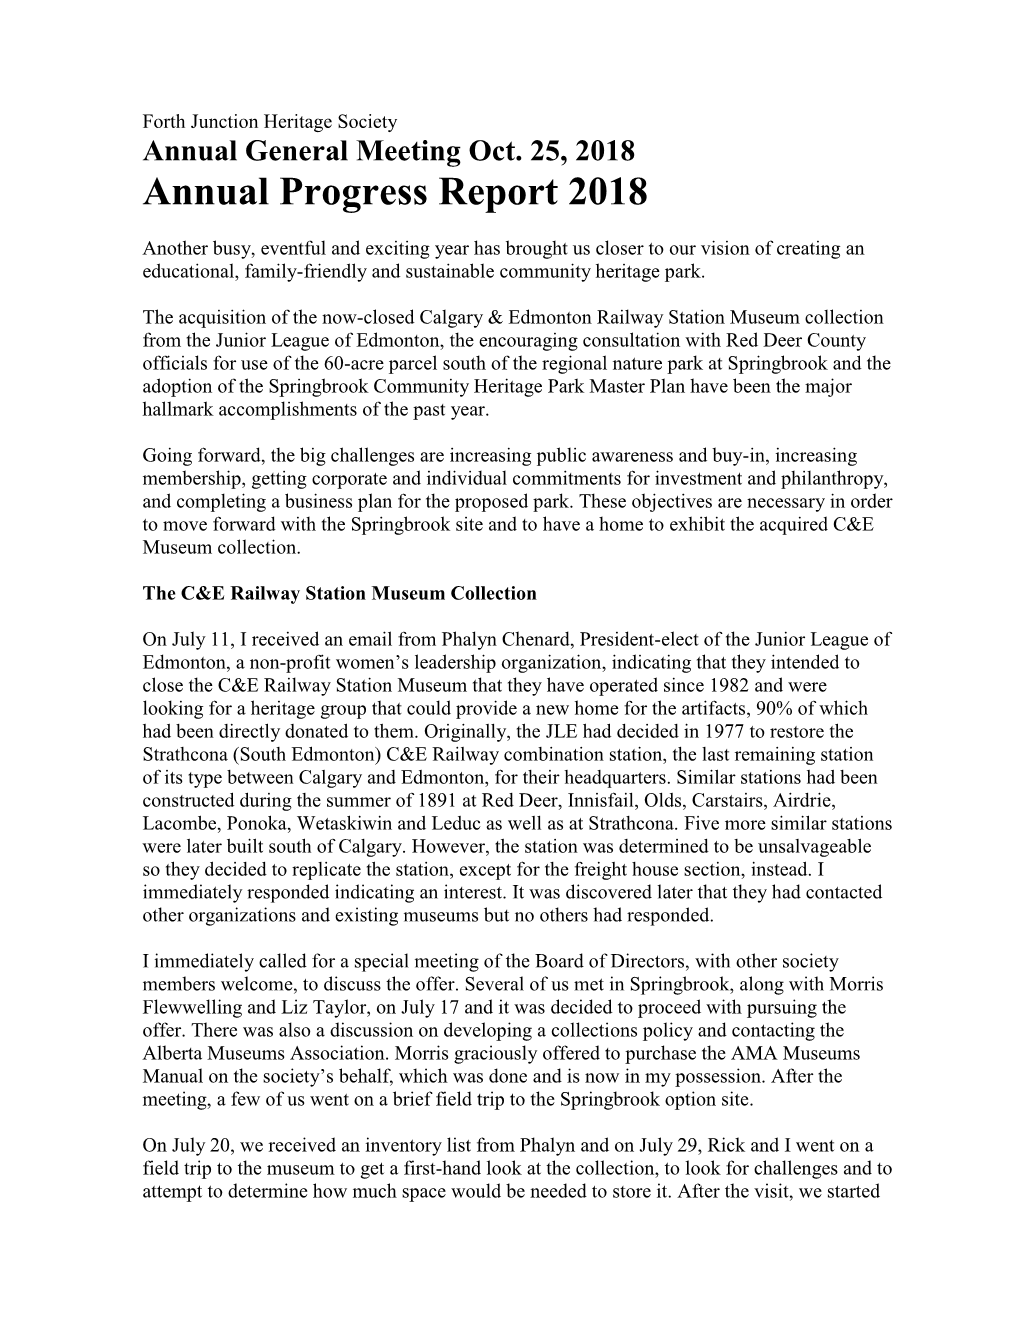 AGM 2018 Report